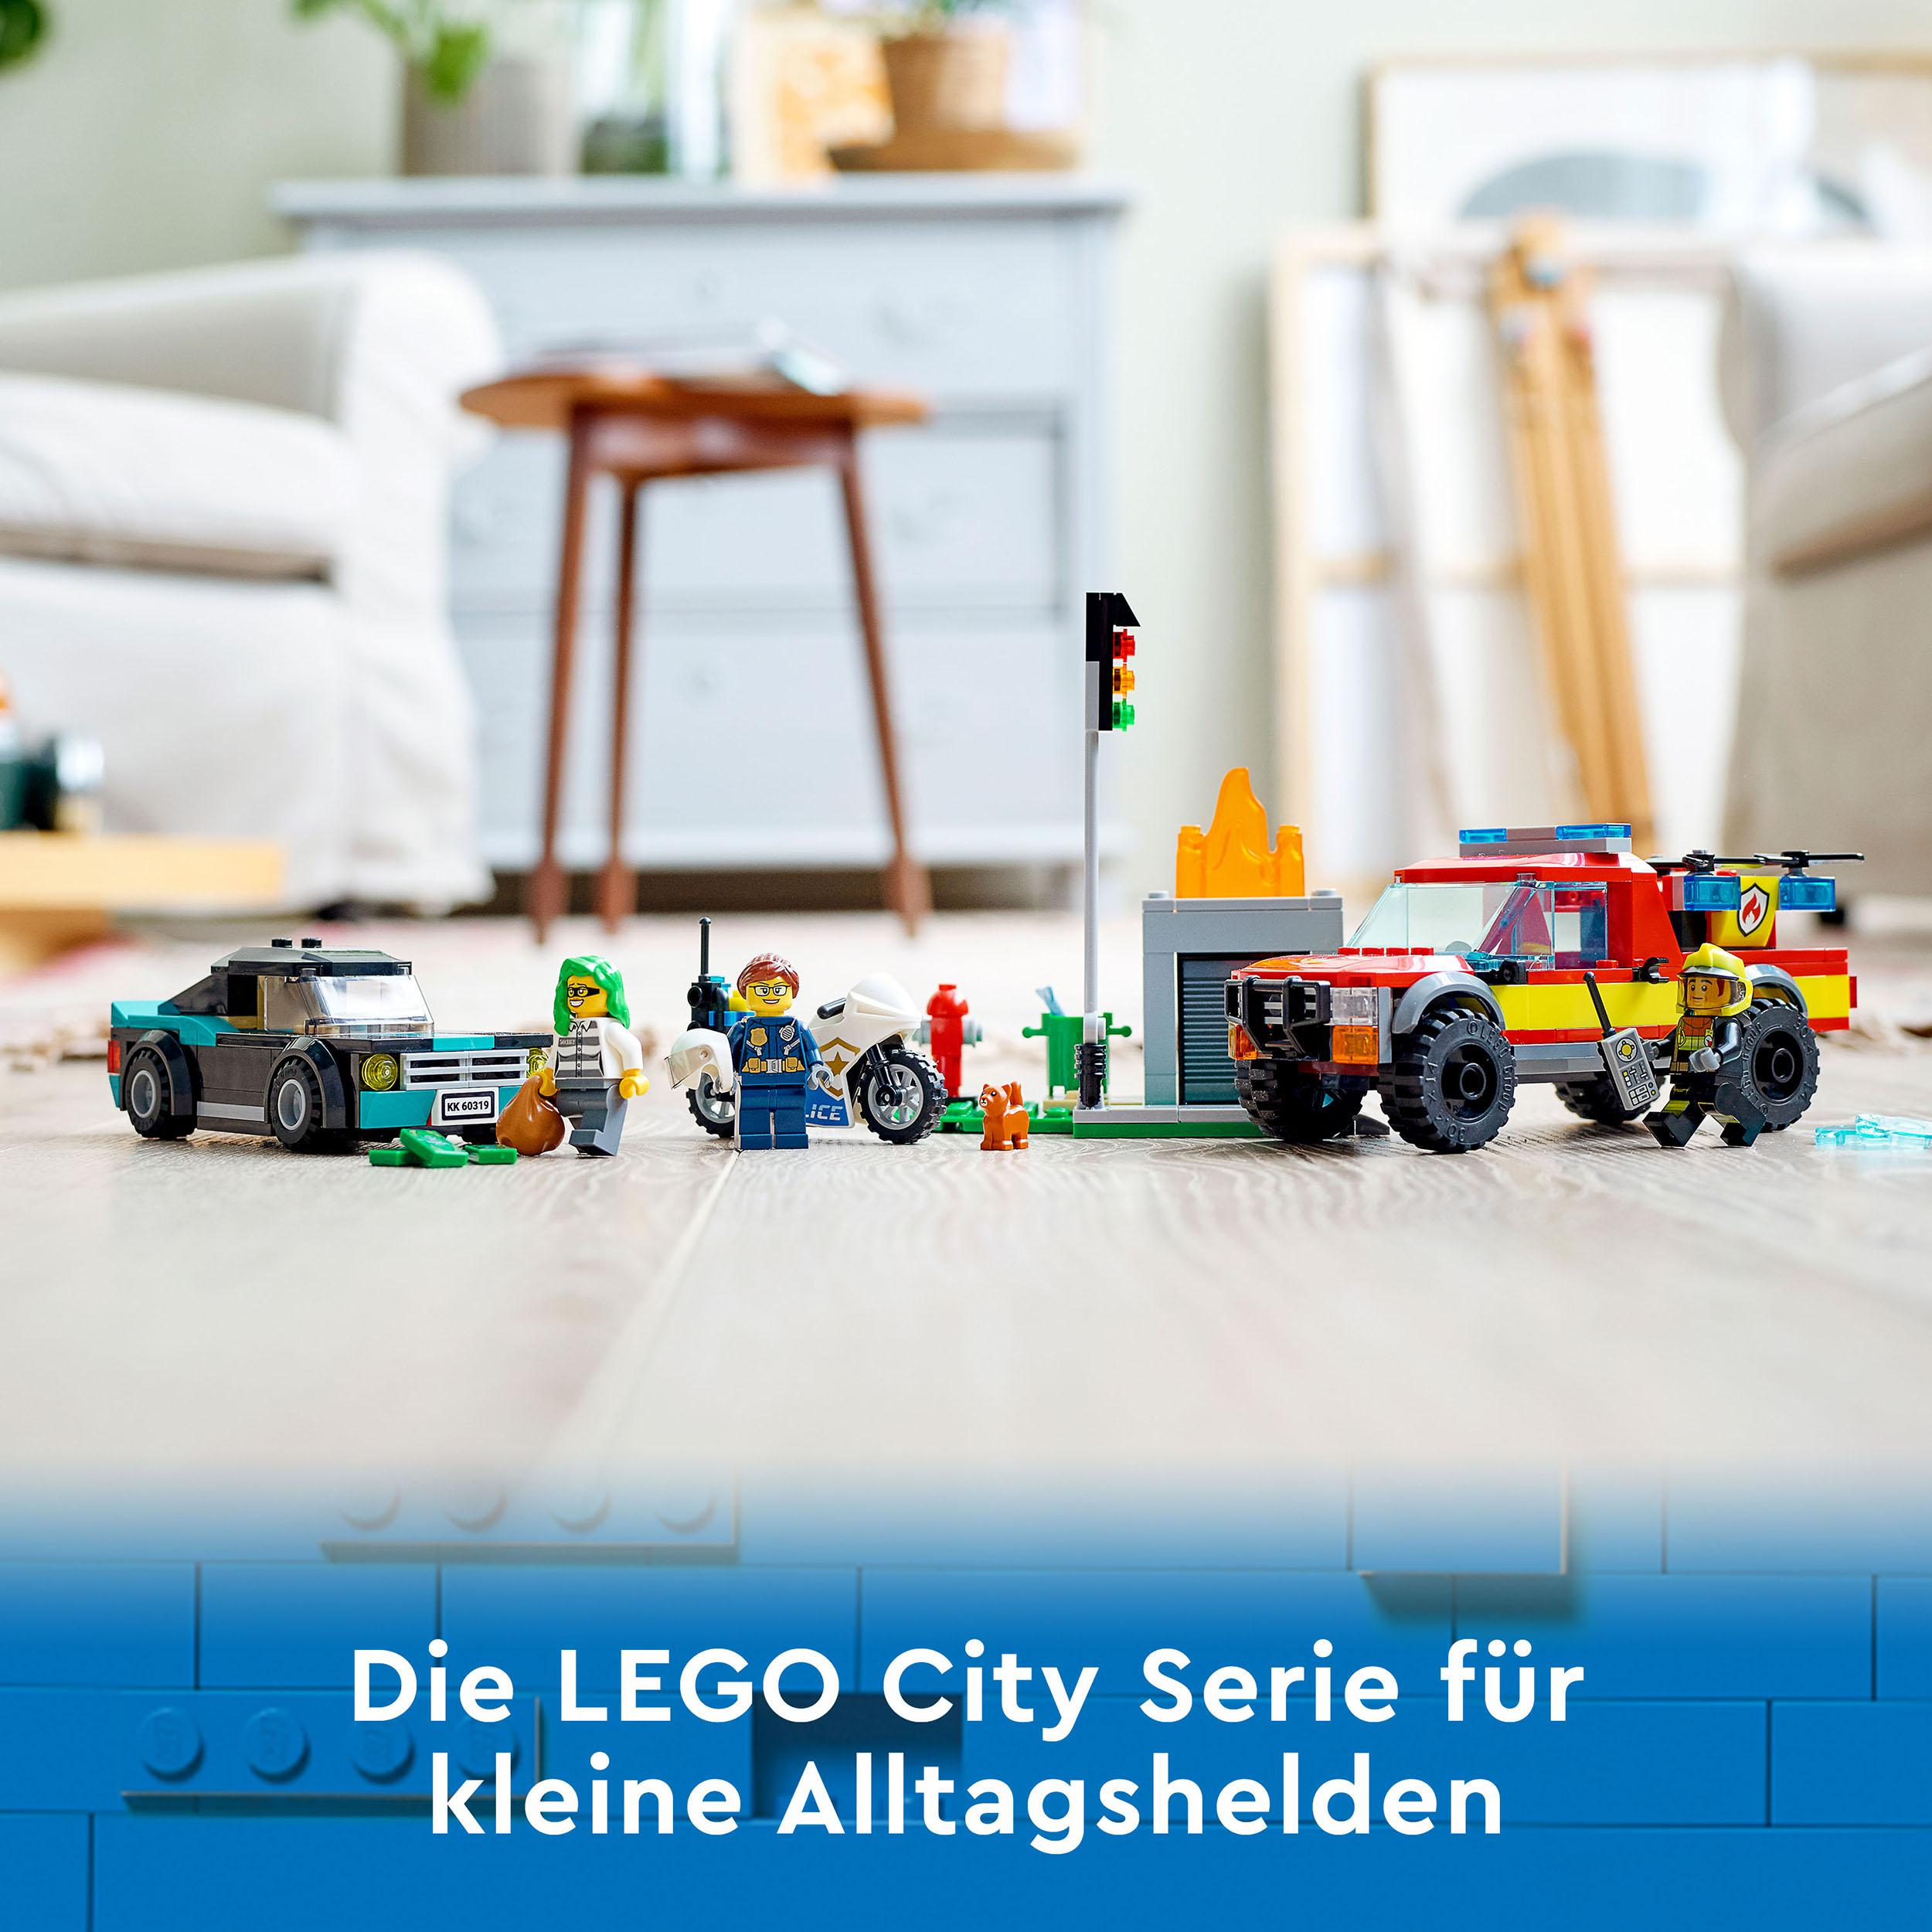 60319 Mehrfarbig Verfolgungsjagd LEGO Bausatz, Löscheinsatz City und